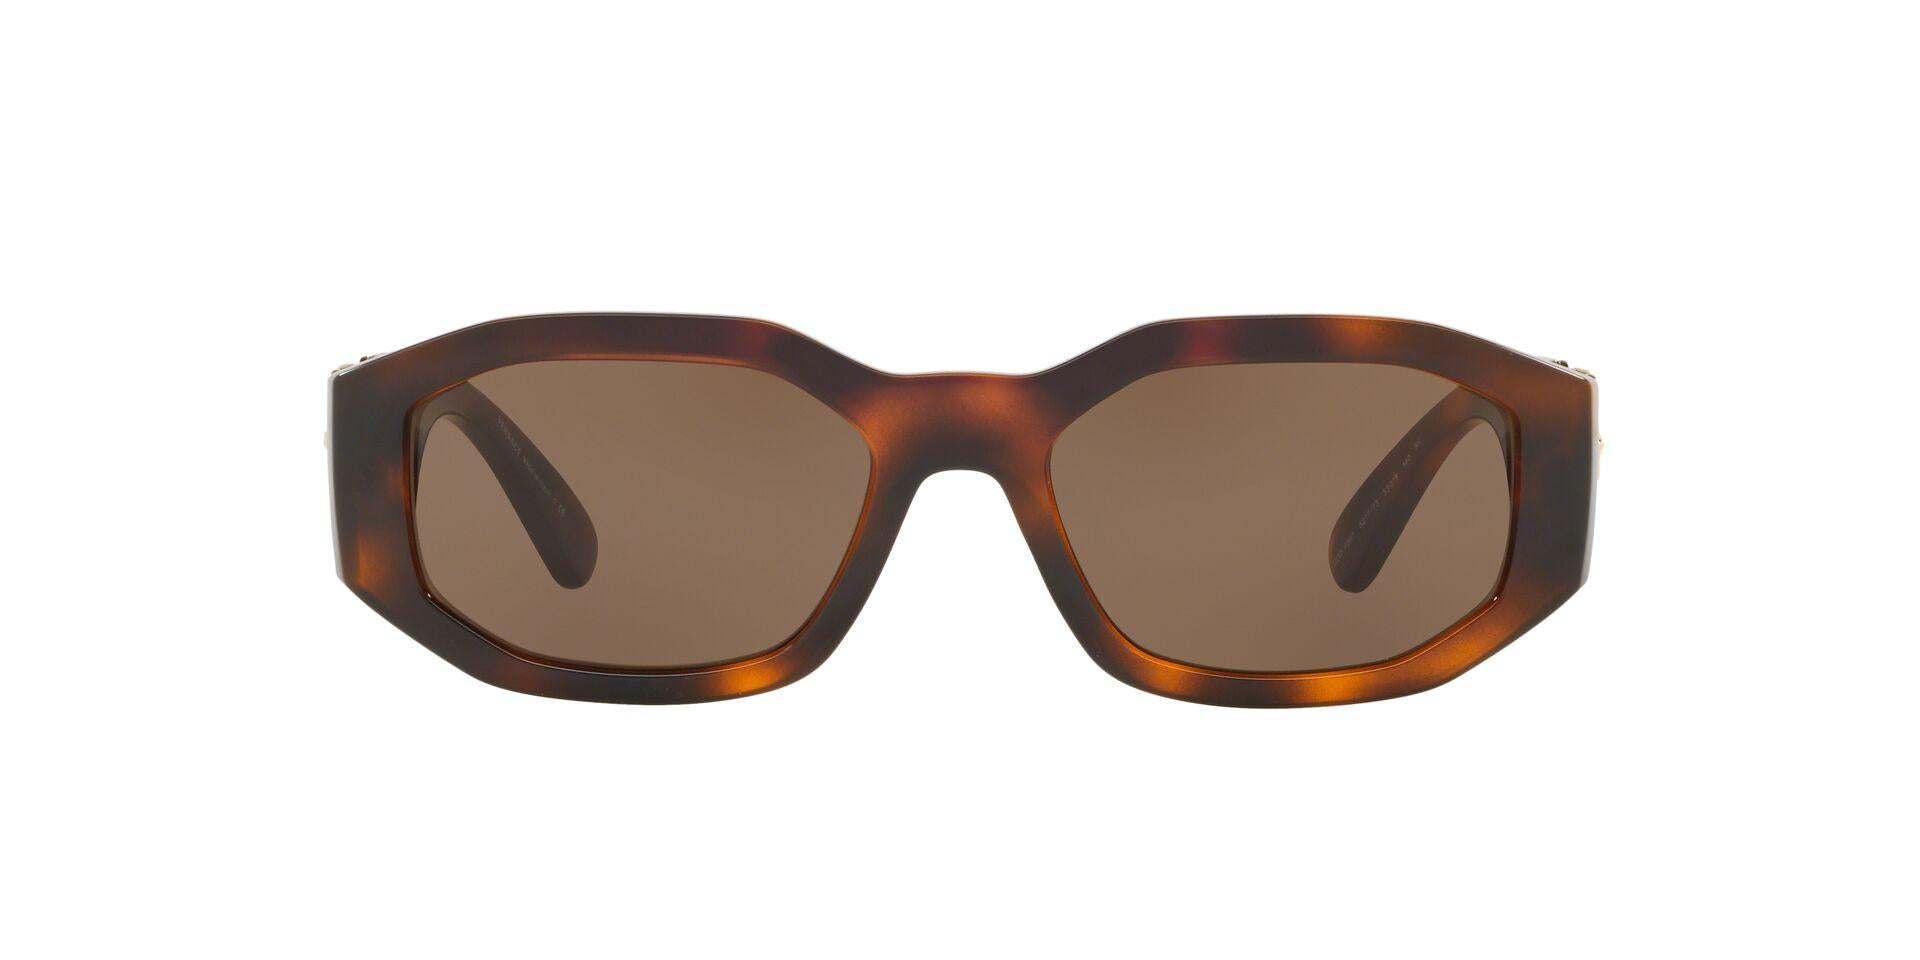 Online Shopping for Designer Sunglasses, Eyeglasses